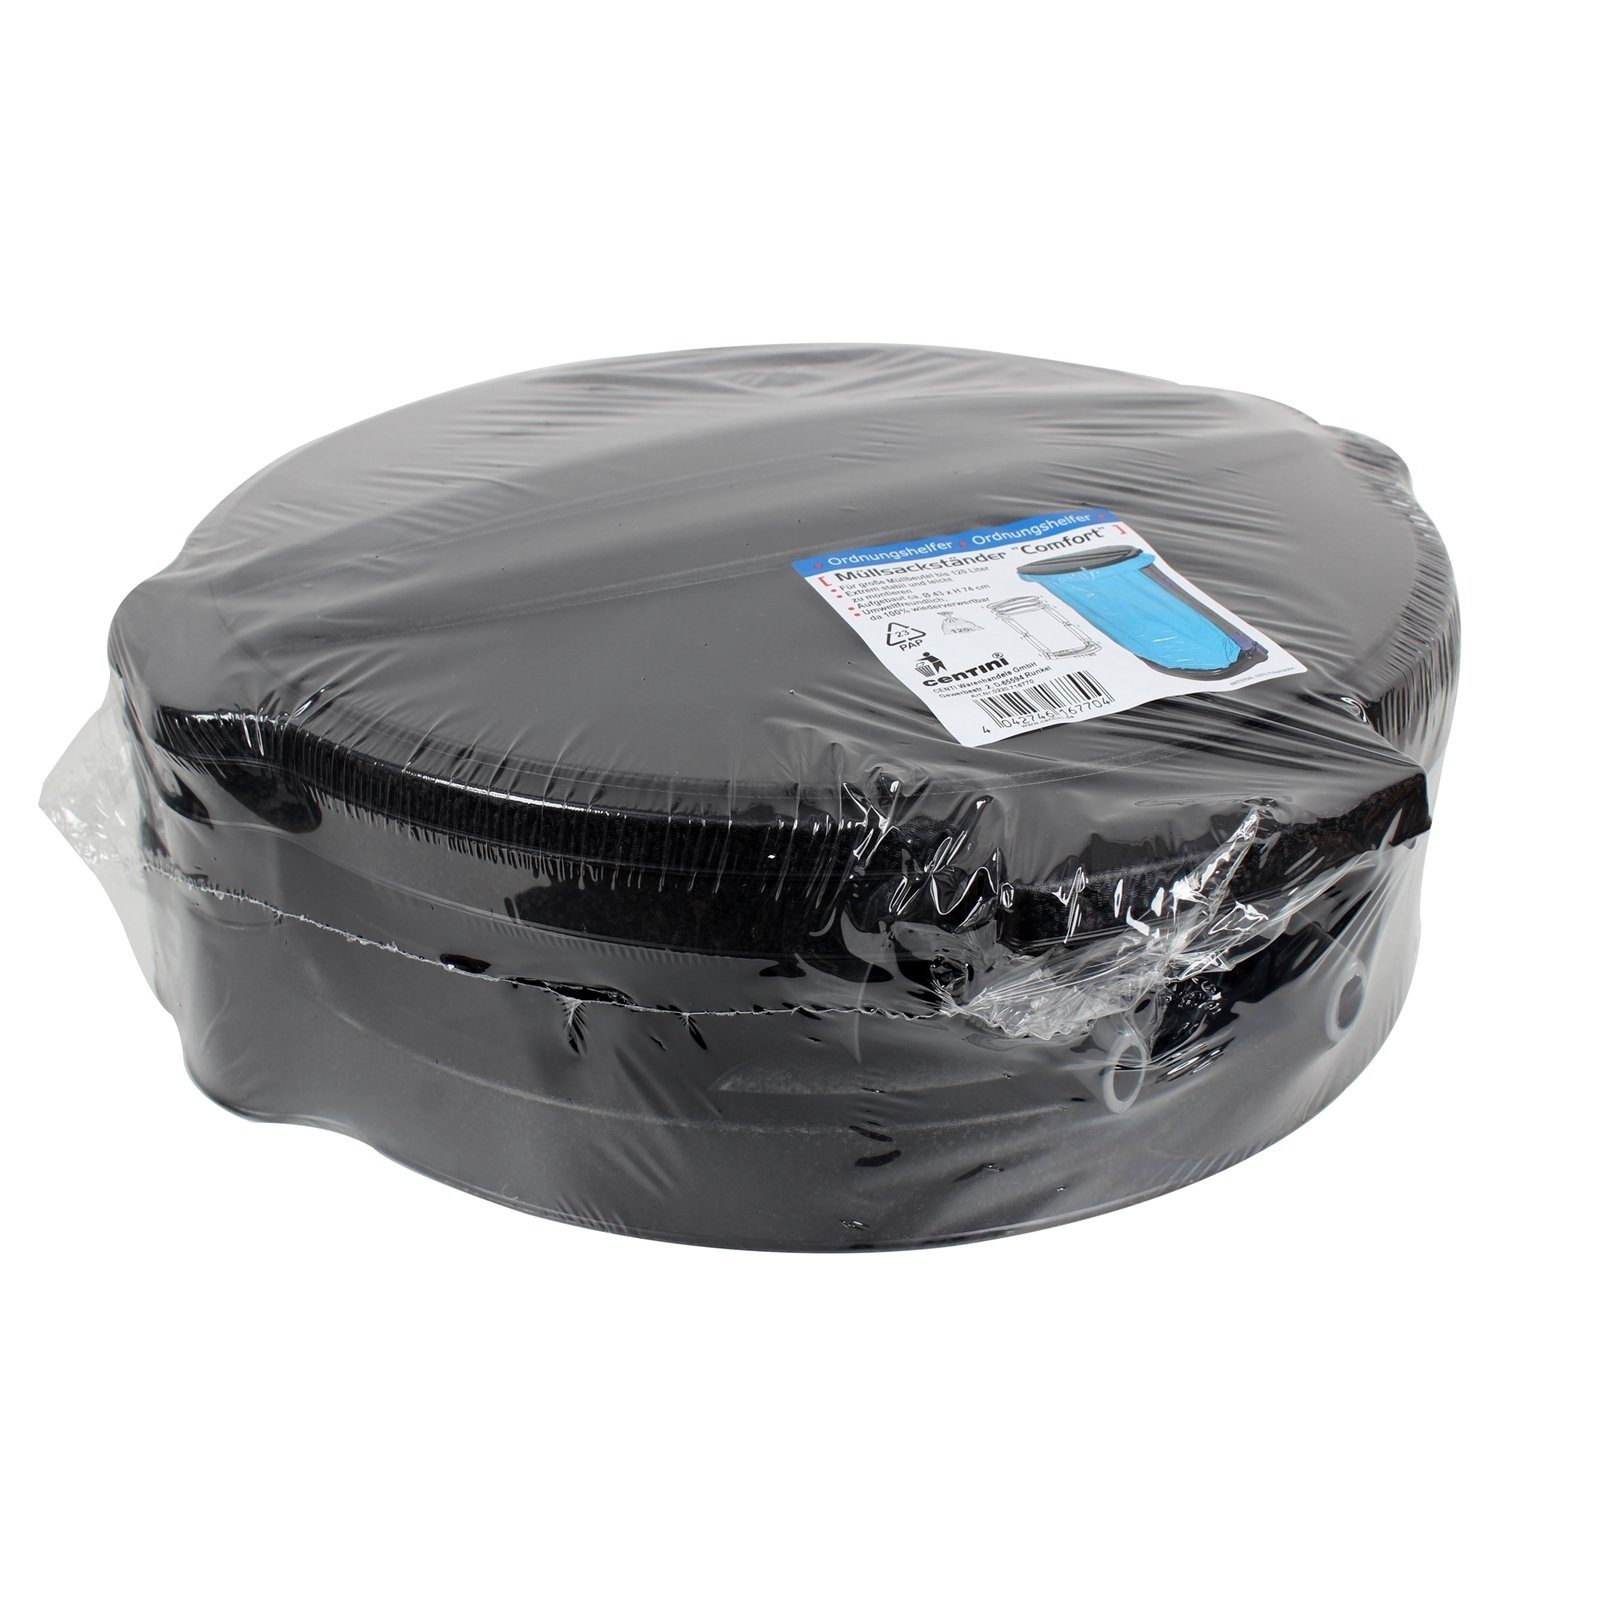 Abfallsack/Müllsack Ständer schwarz-grau für HTI-Living Müllsackständer